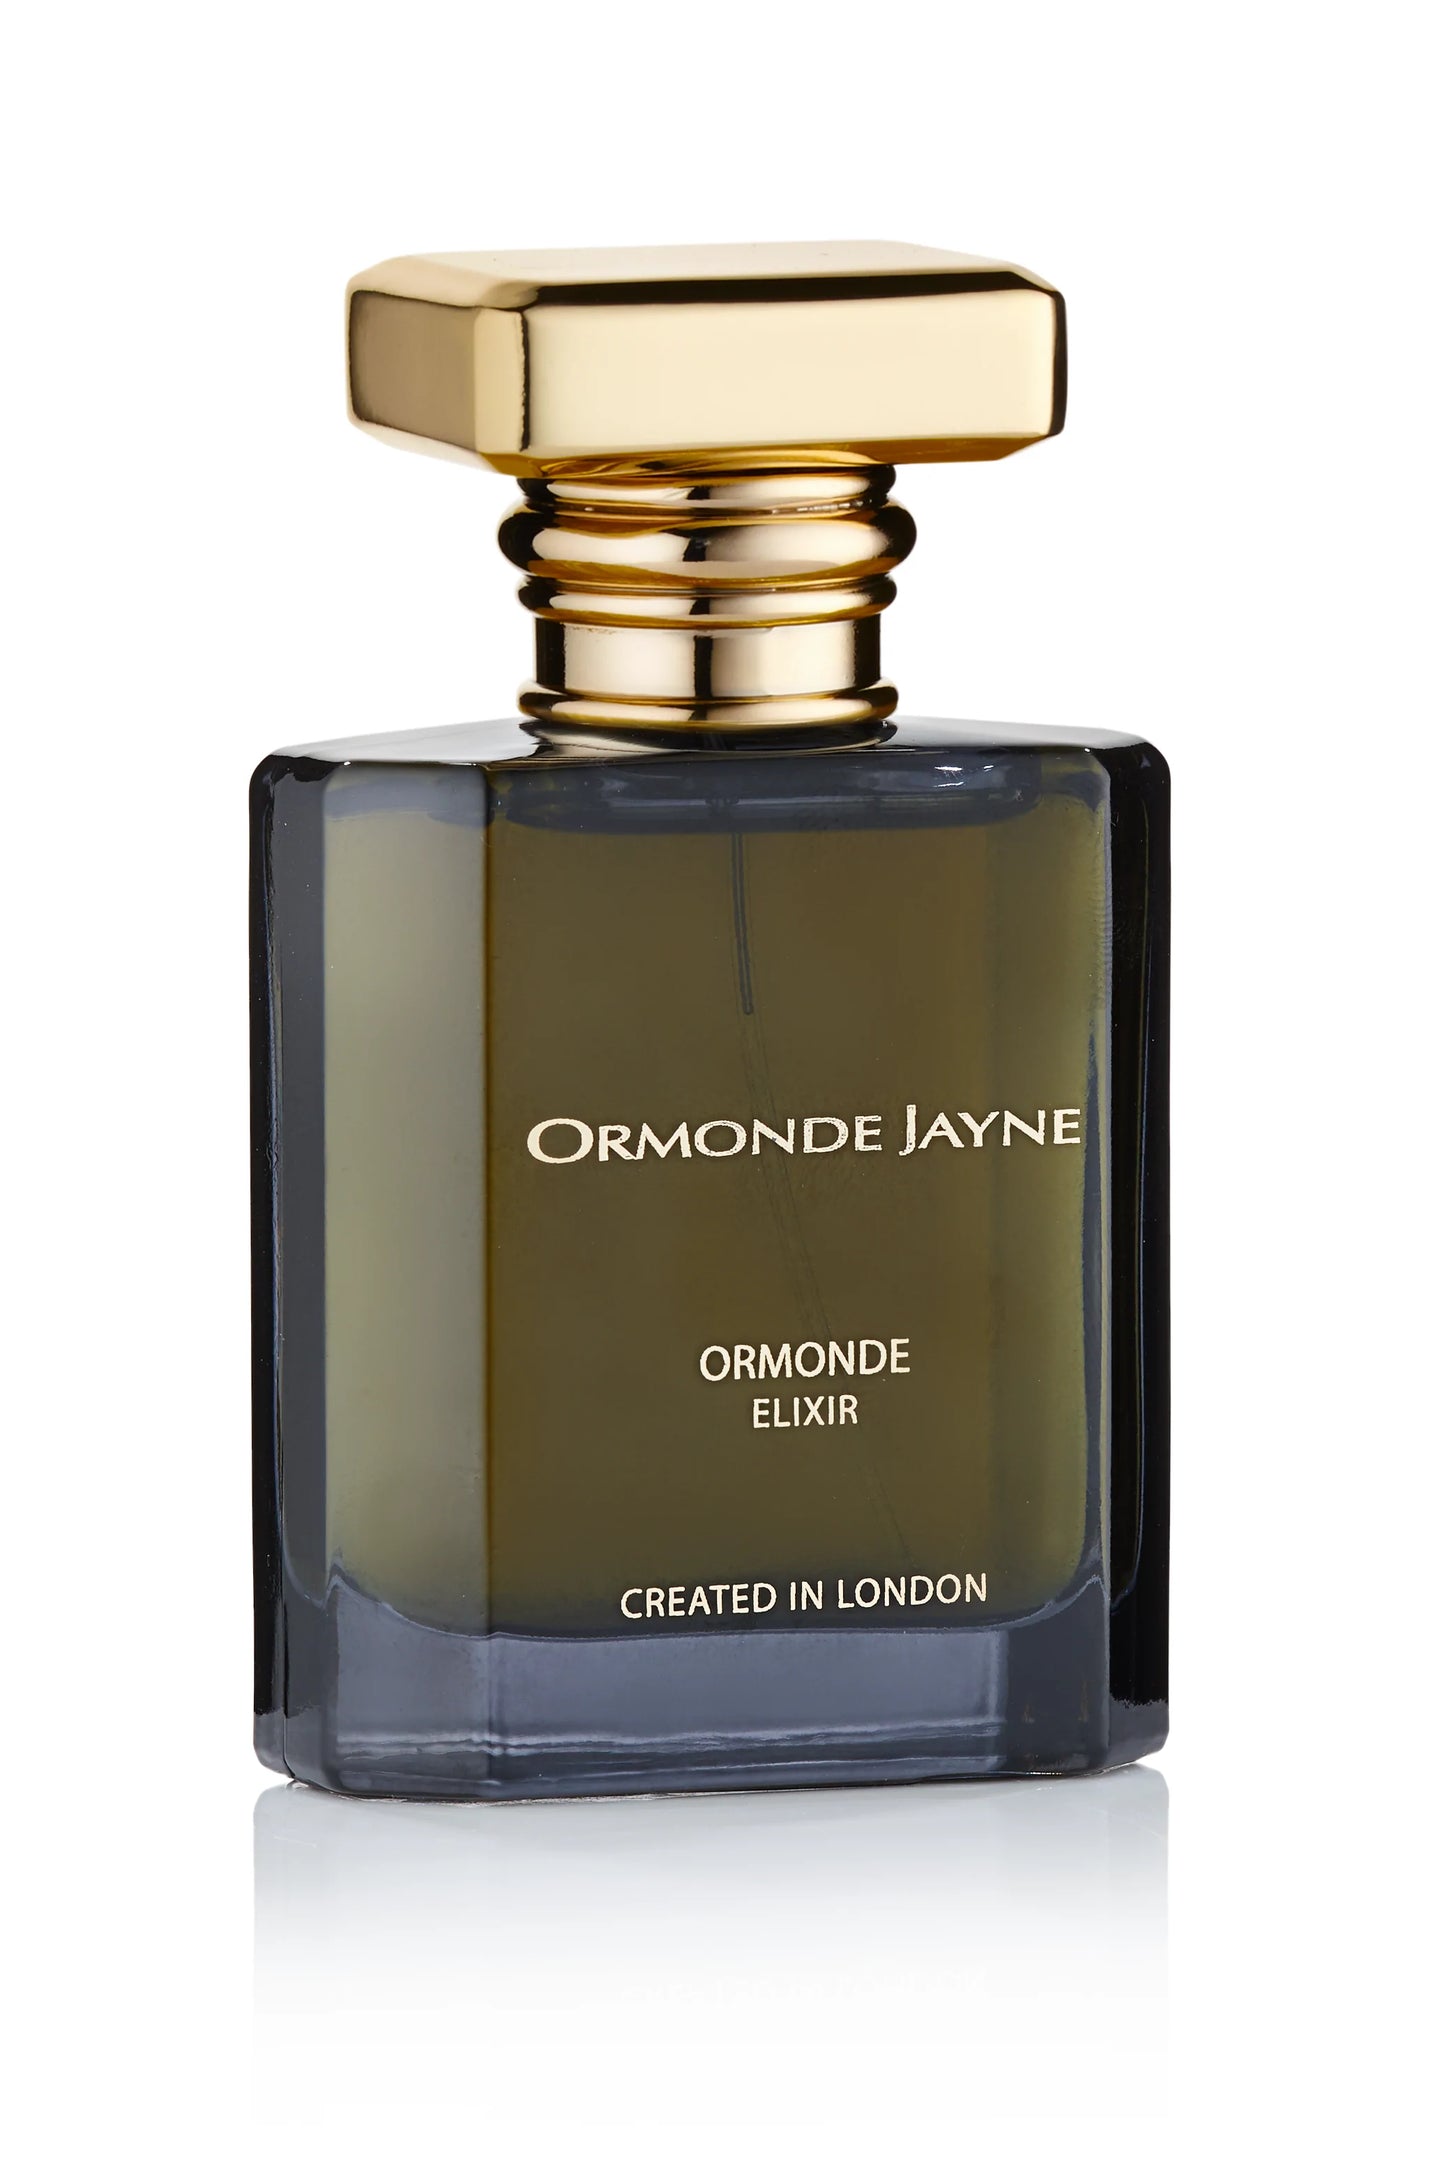 Ormonde Jayne Ormonde Elixir 2ml 0.06 fl. muestra de fragancia oficial de oz